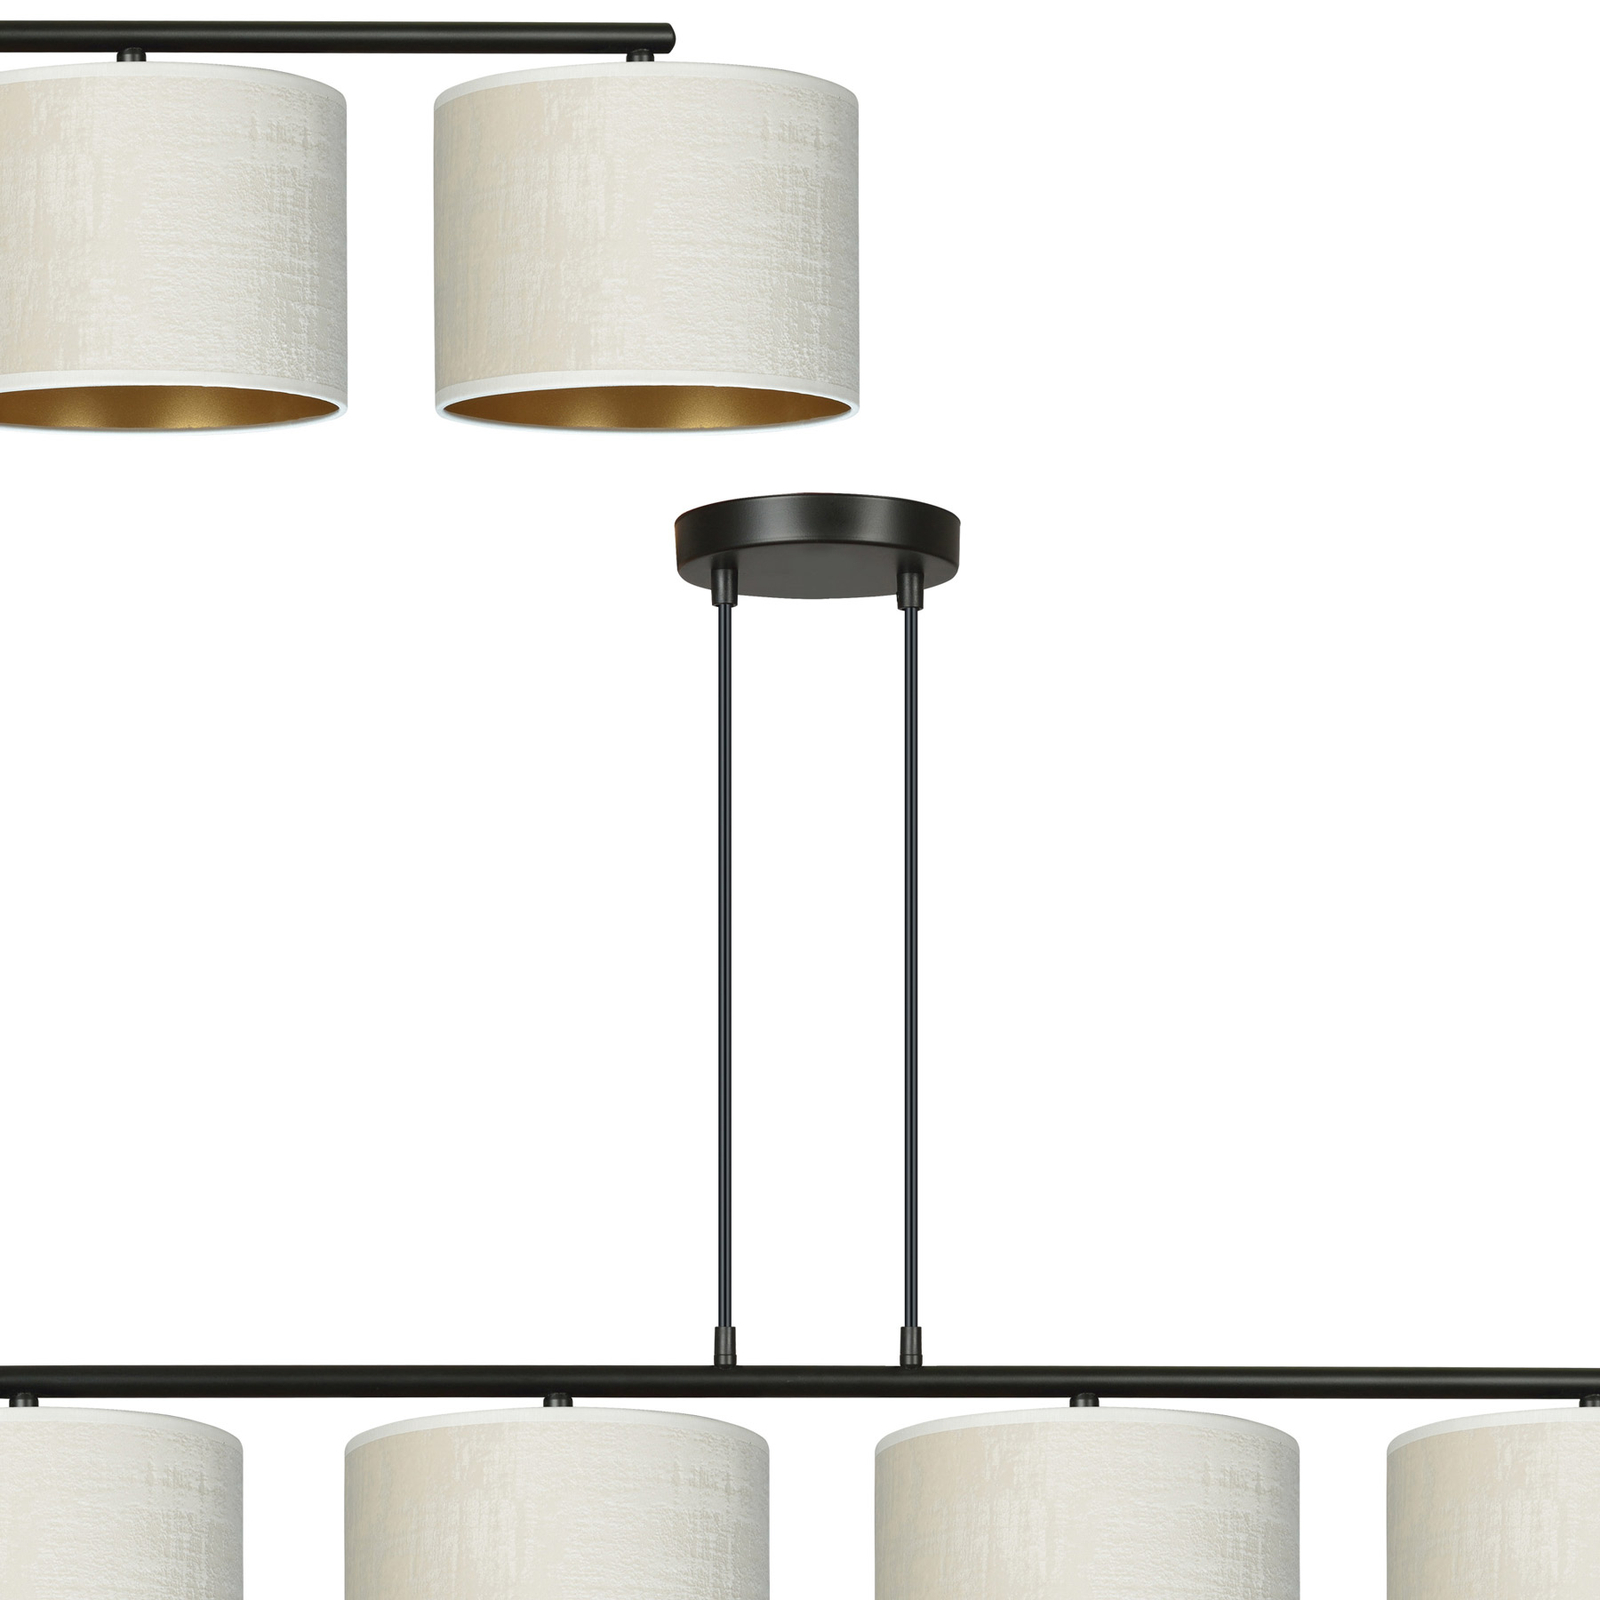 Hanglamp Jari stoffen kap 4-lamps lang, wit-goud